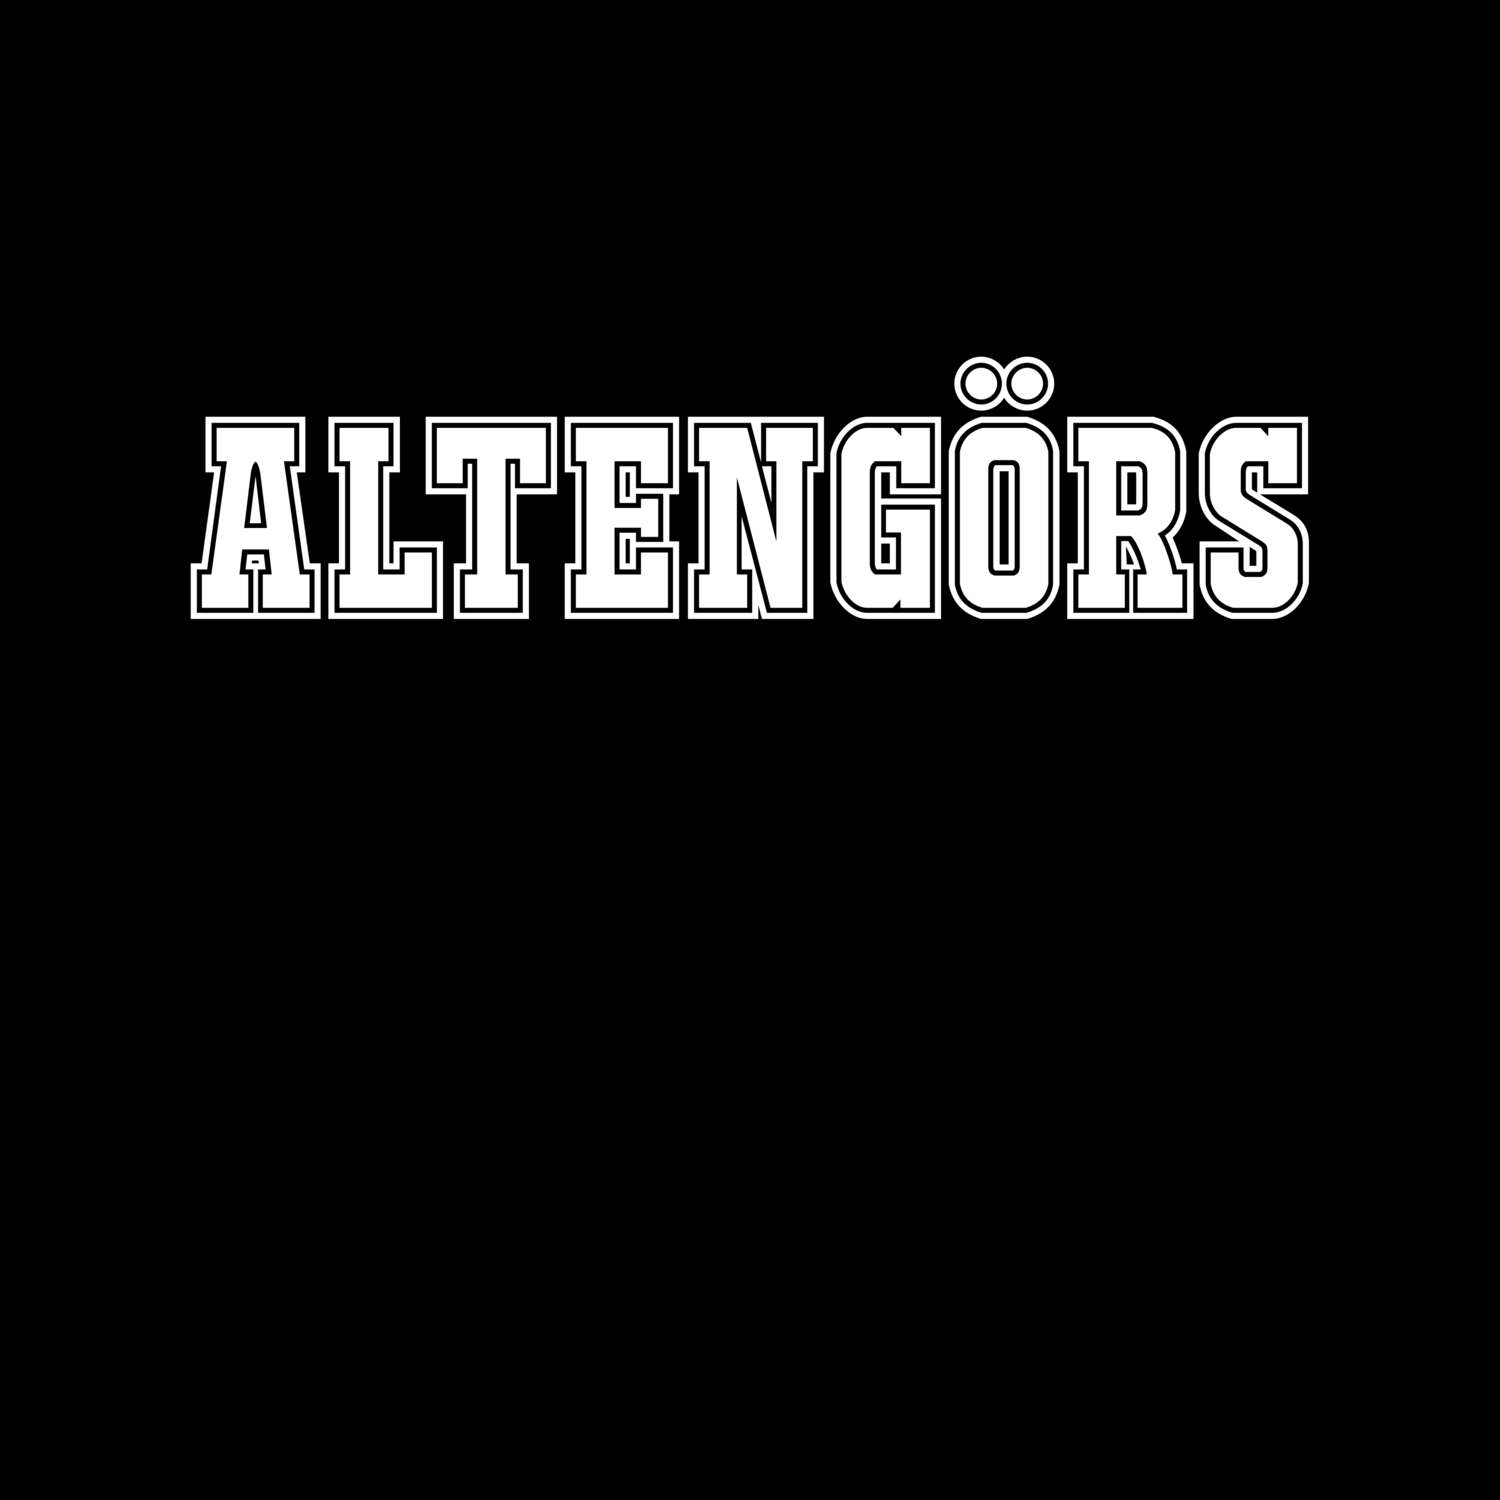 Altengörs T-Shirt »Classic«